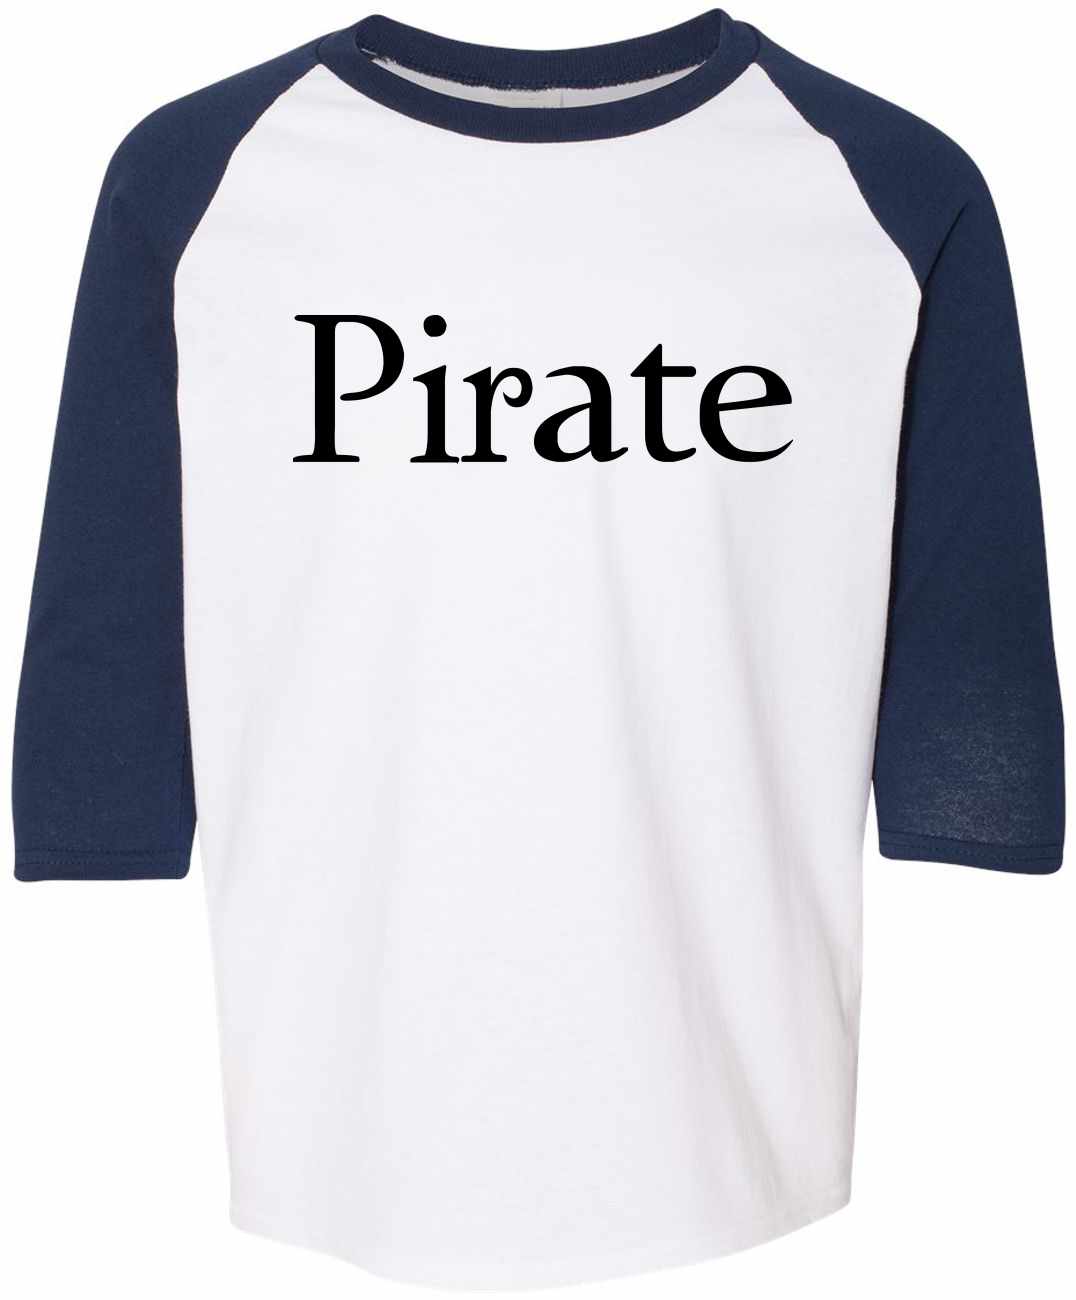 Pirate on Youth Baseball Shirt (#620-212)